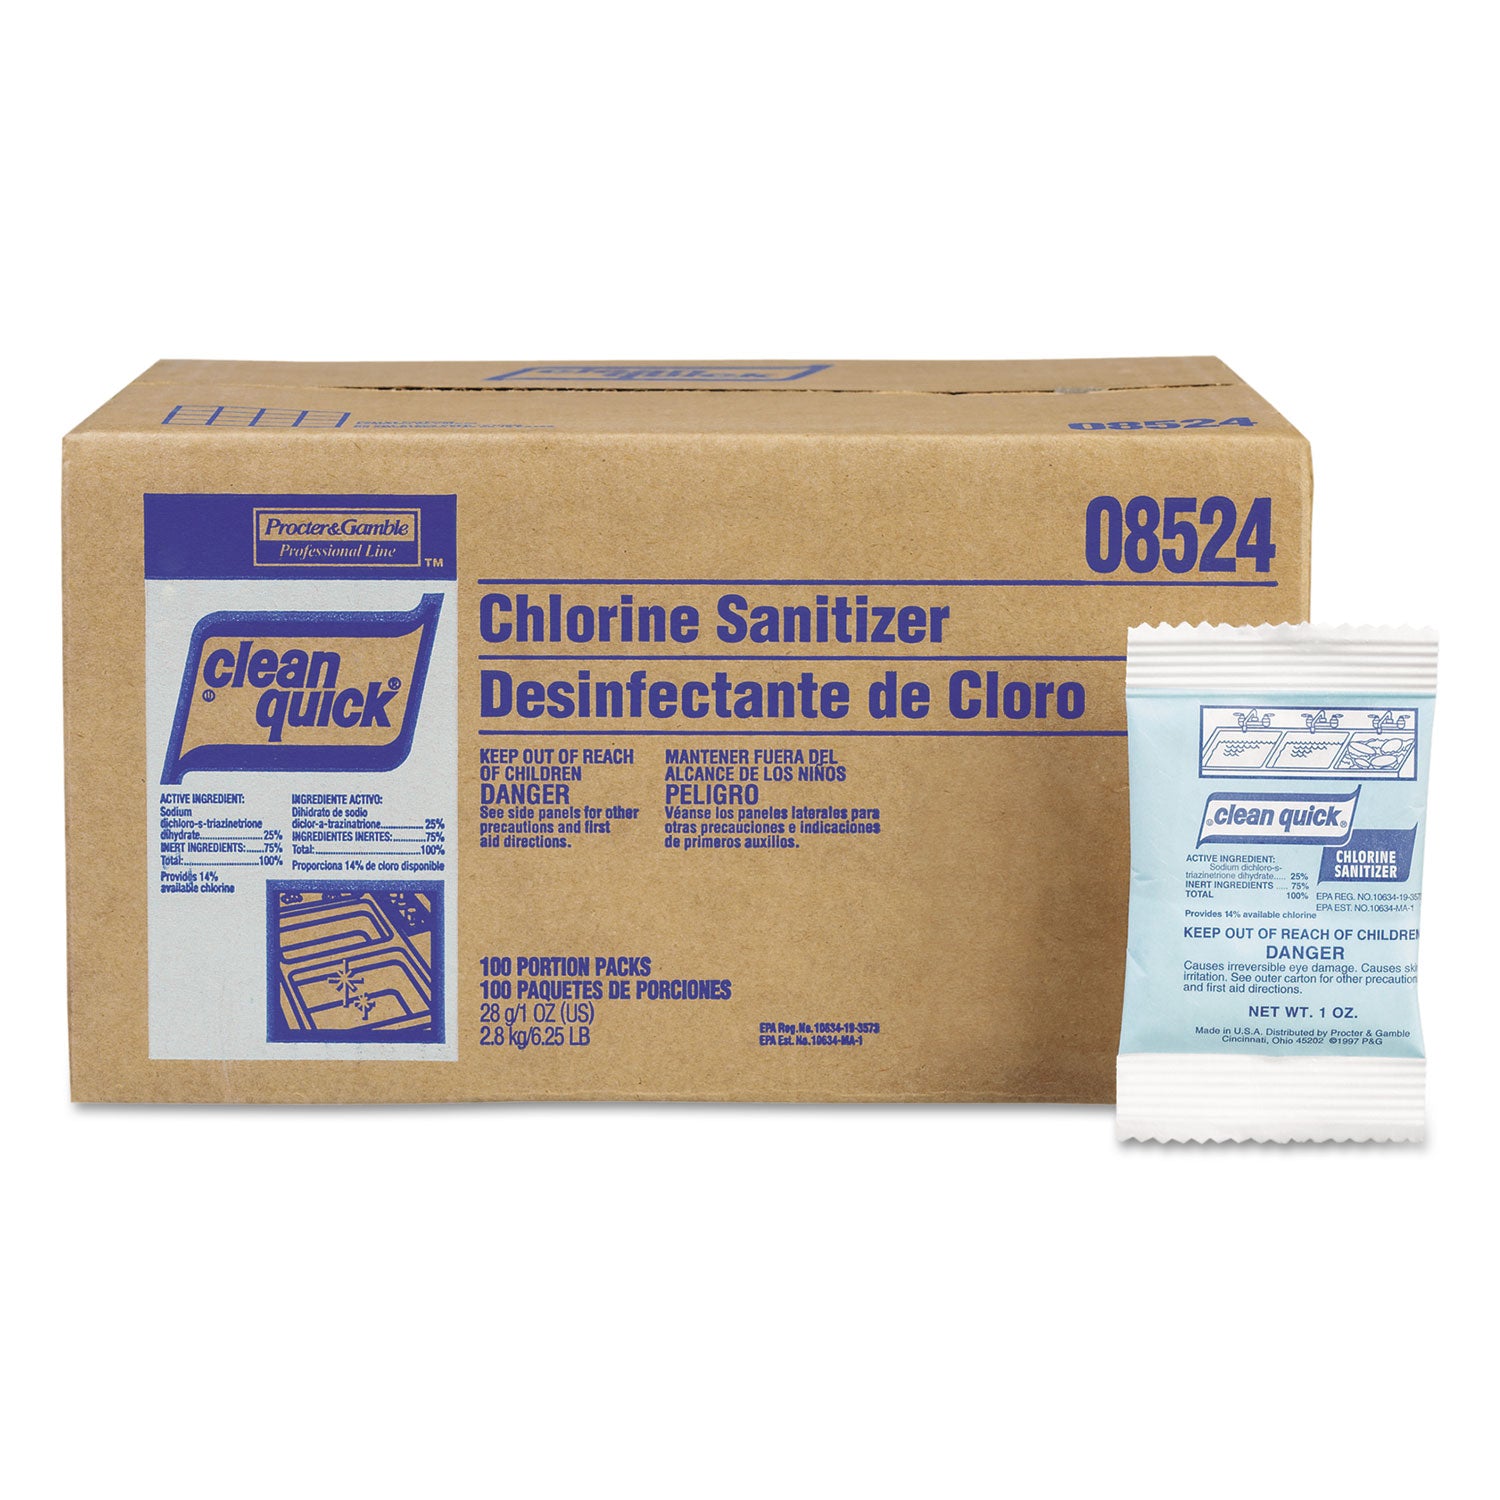 powdered-chlorine-based-sanitizer-1oz-packet-100-carton_pgc02584 - 1